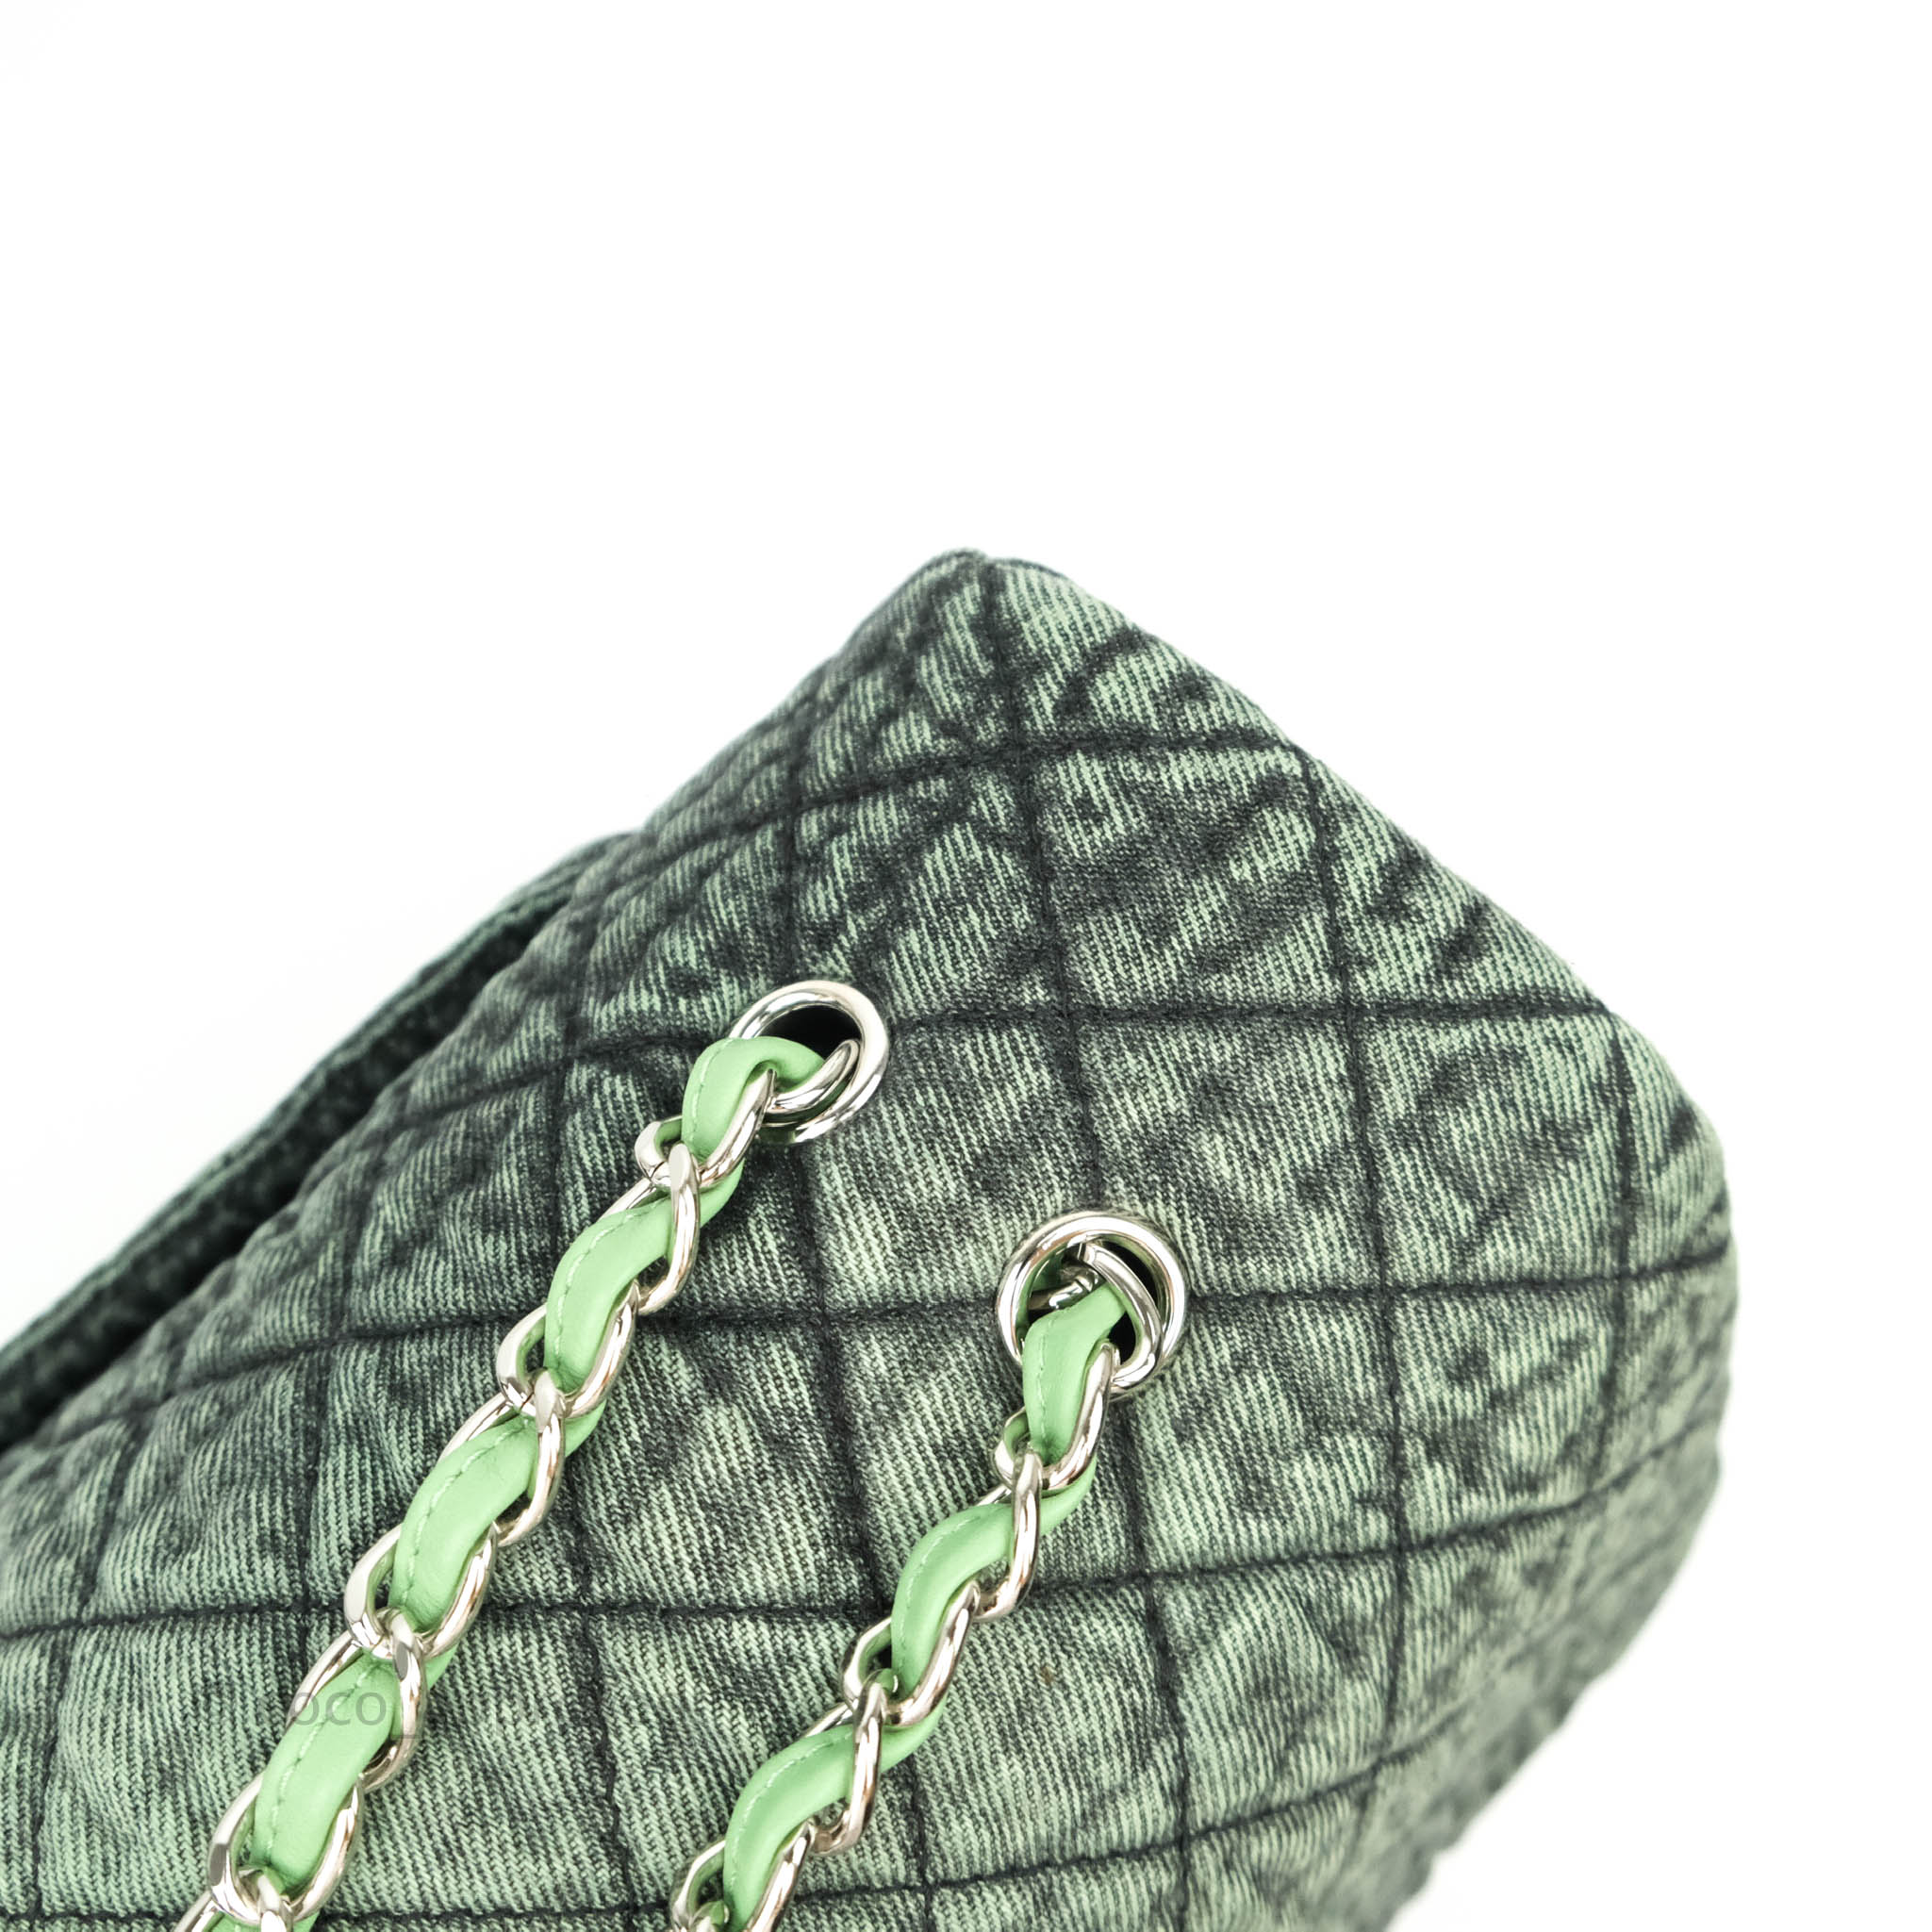 Chanel Small XXL Denimpression Flap Bag Aged Green Denim Silver